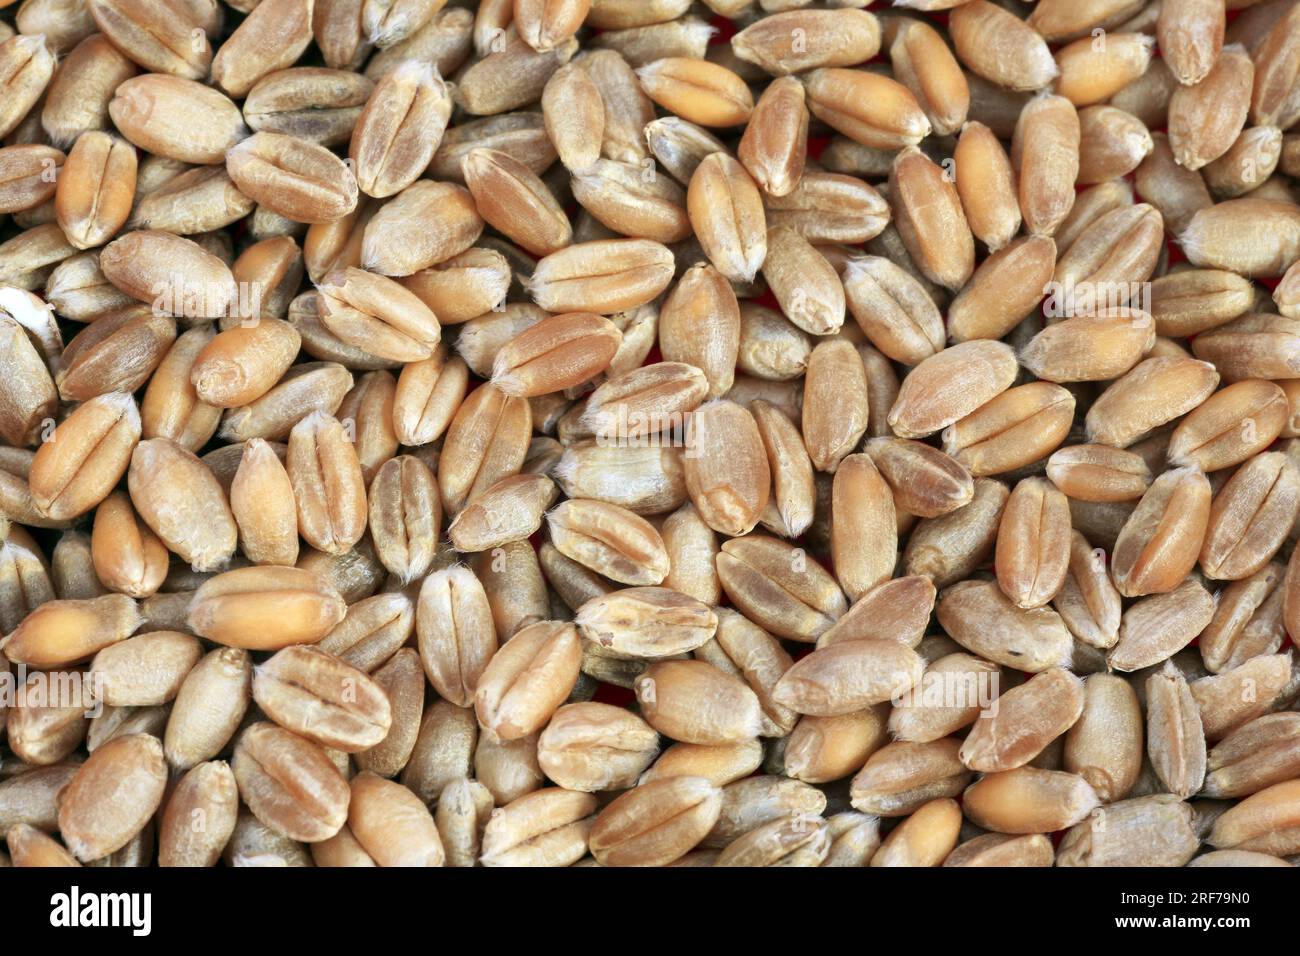 SAAT-Weizen, Weich-Weizen, Weizen (Triticum aestivum), Koerner | pane frumento, grano coltivato (Triticum aestivum), cereali, Foto Stock